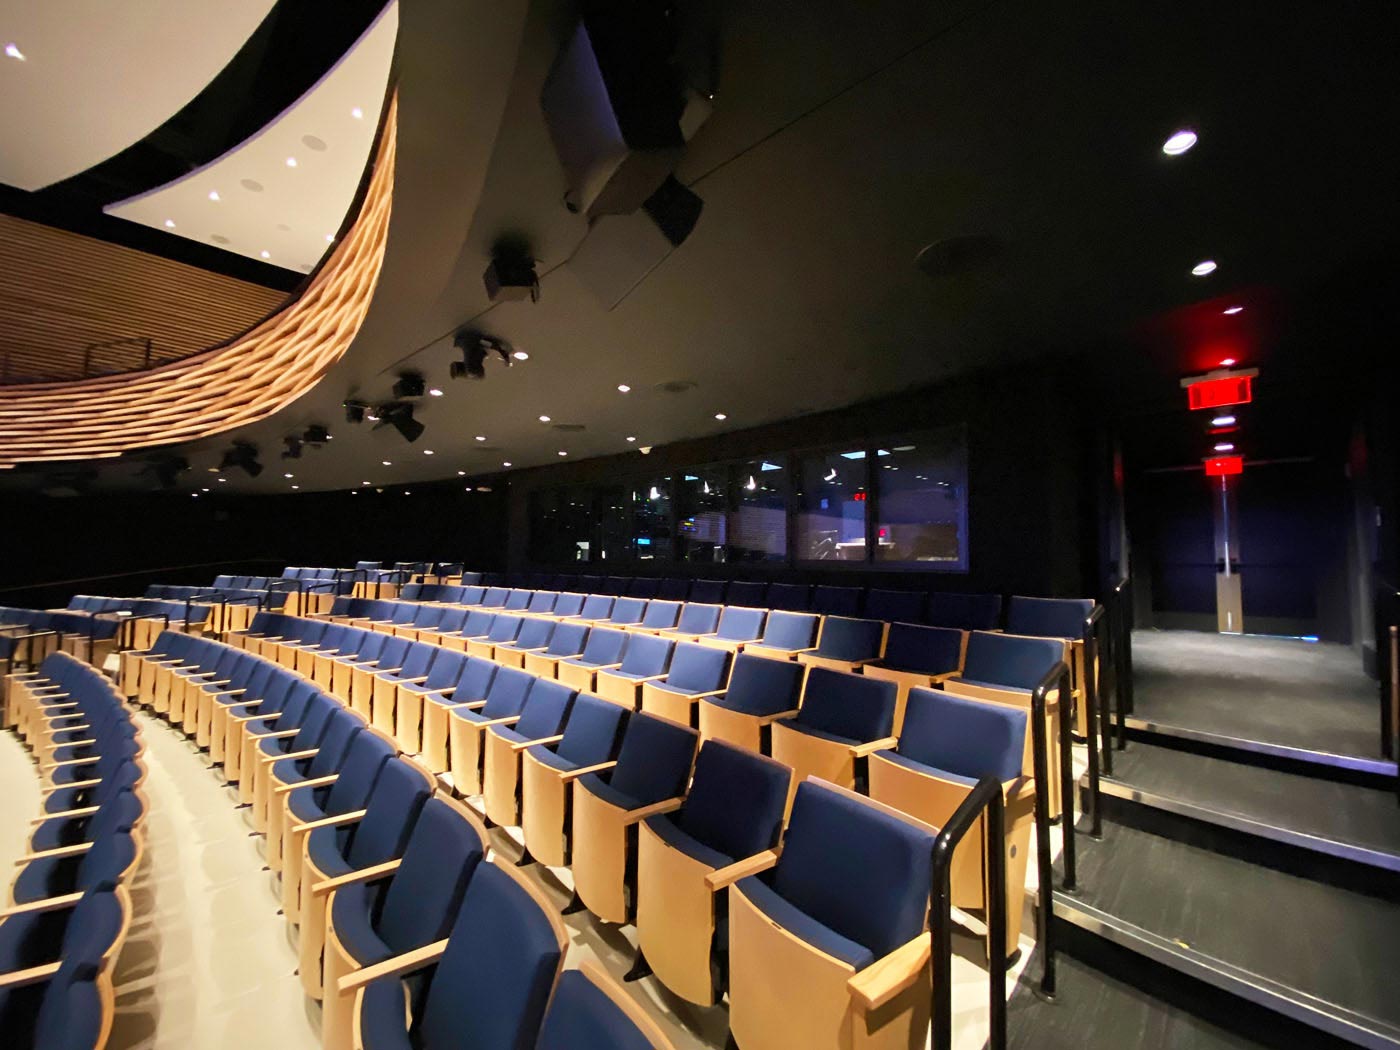 Le centre de contrôle se situe au fond de l'auditorium, permettant de superviser et de contrôler facilement le système audiovisuel.